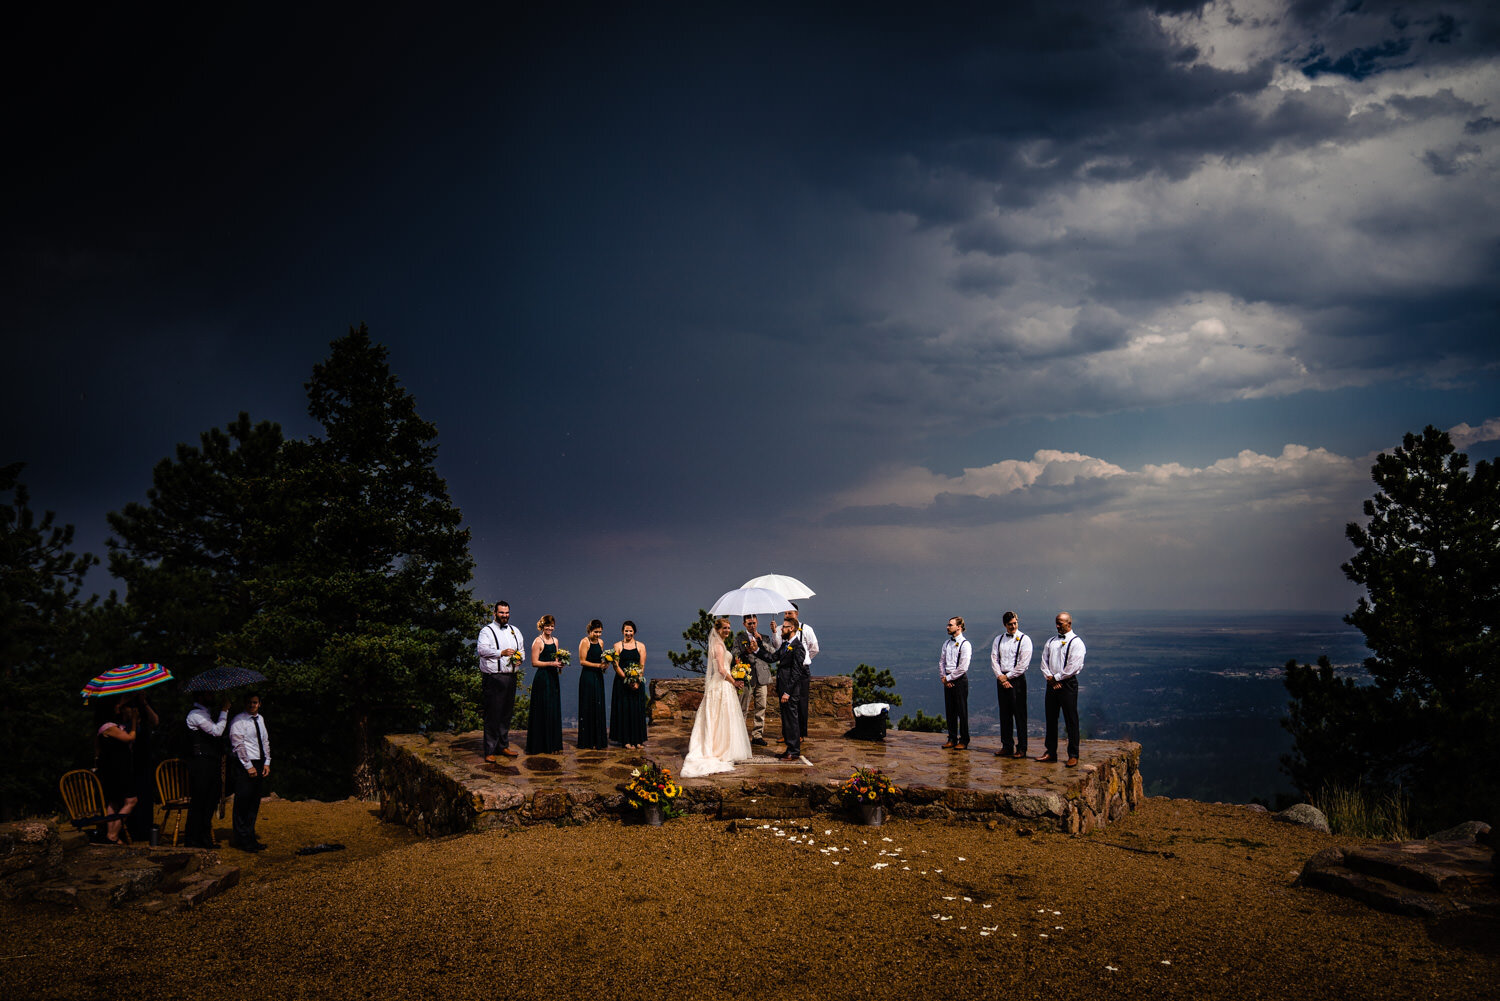  Rainy ceremony at Sunrise Amphitheater by wedding photographer, JMGant Photography 